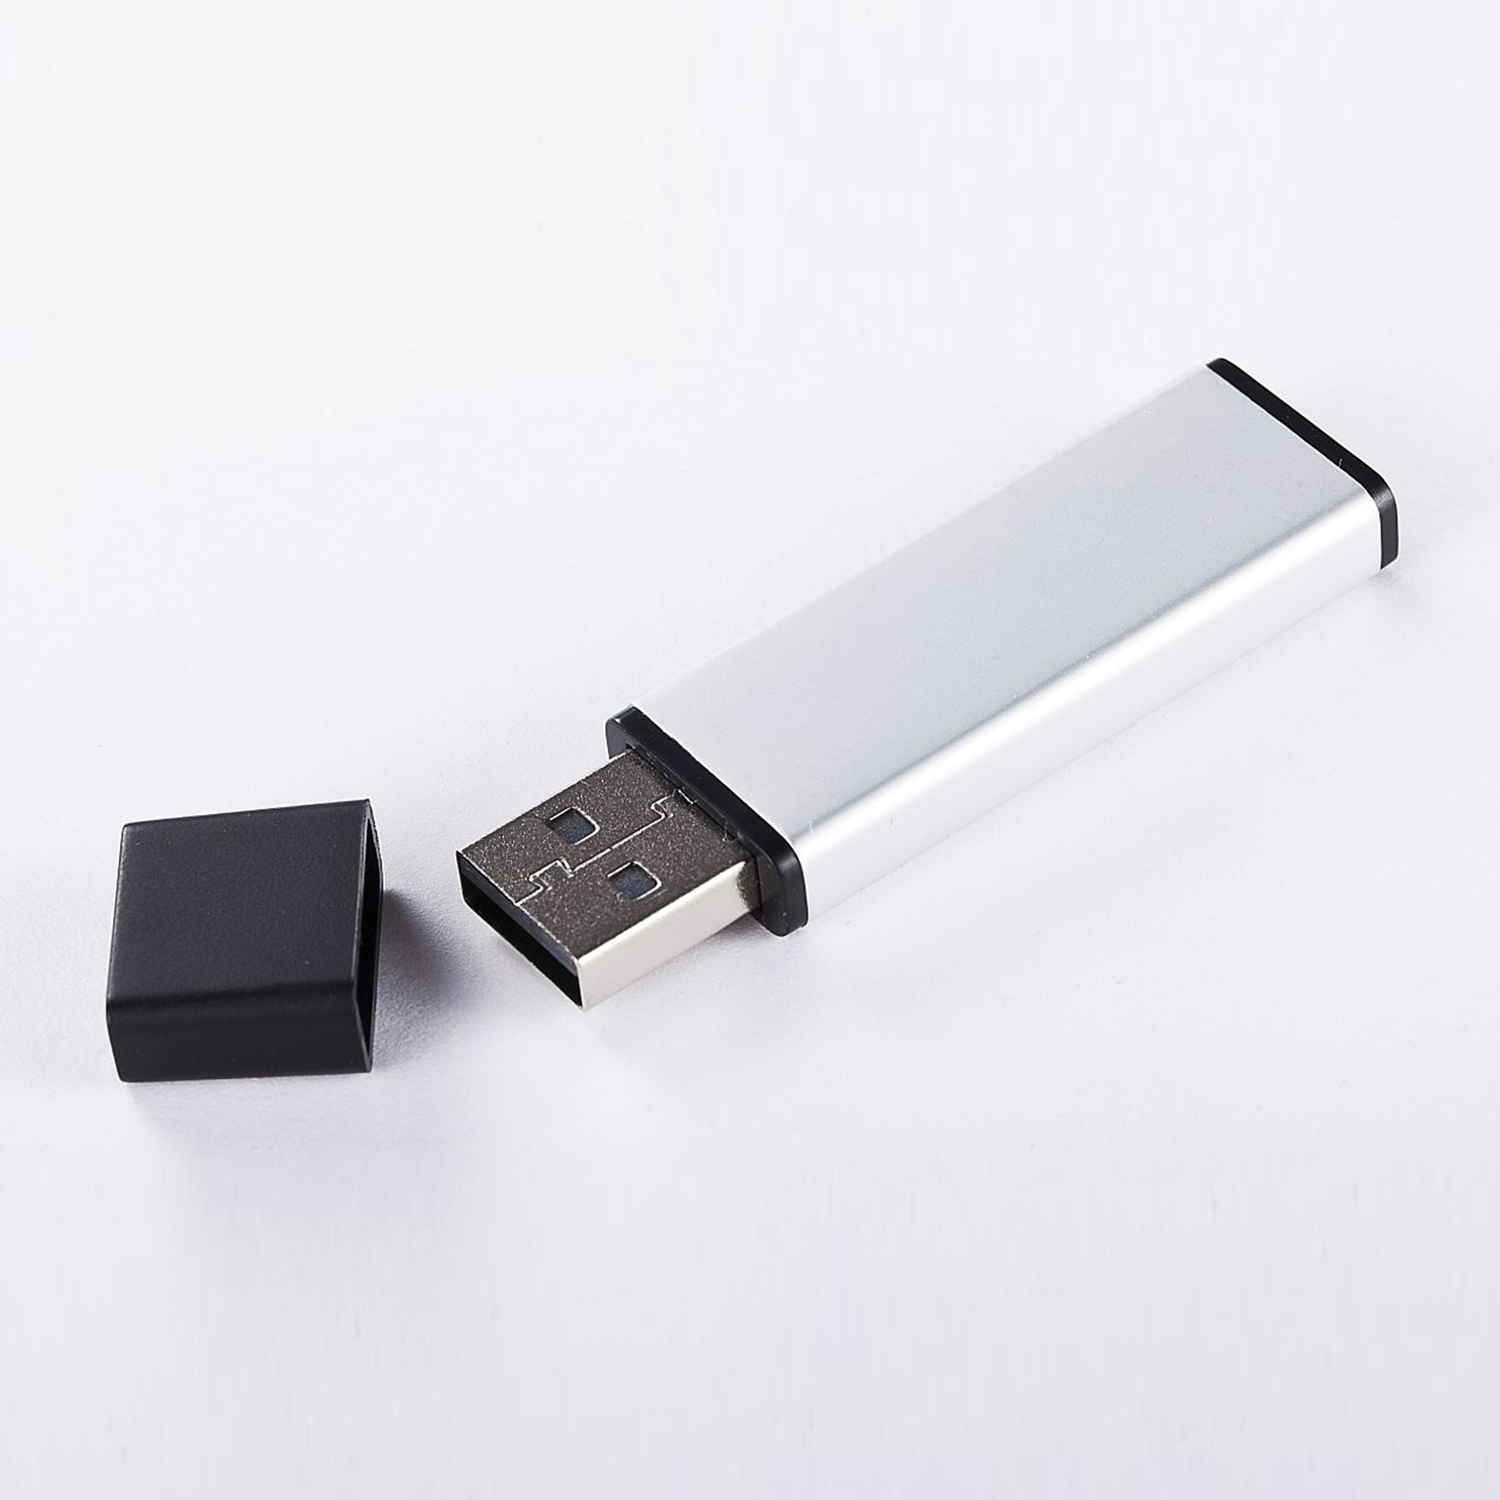 32 USB GB) Stick (ALUMINIUM, USB GB 2.0 XLYNE 32 -